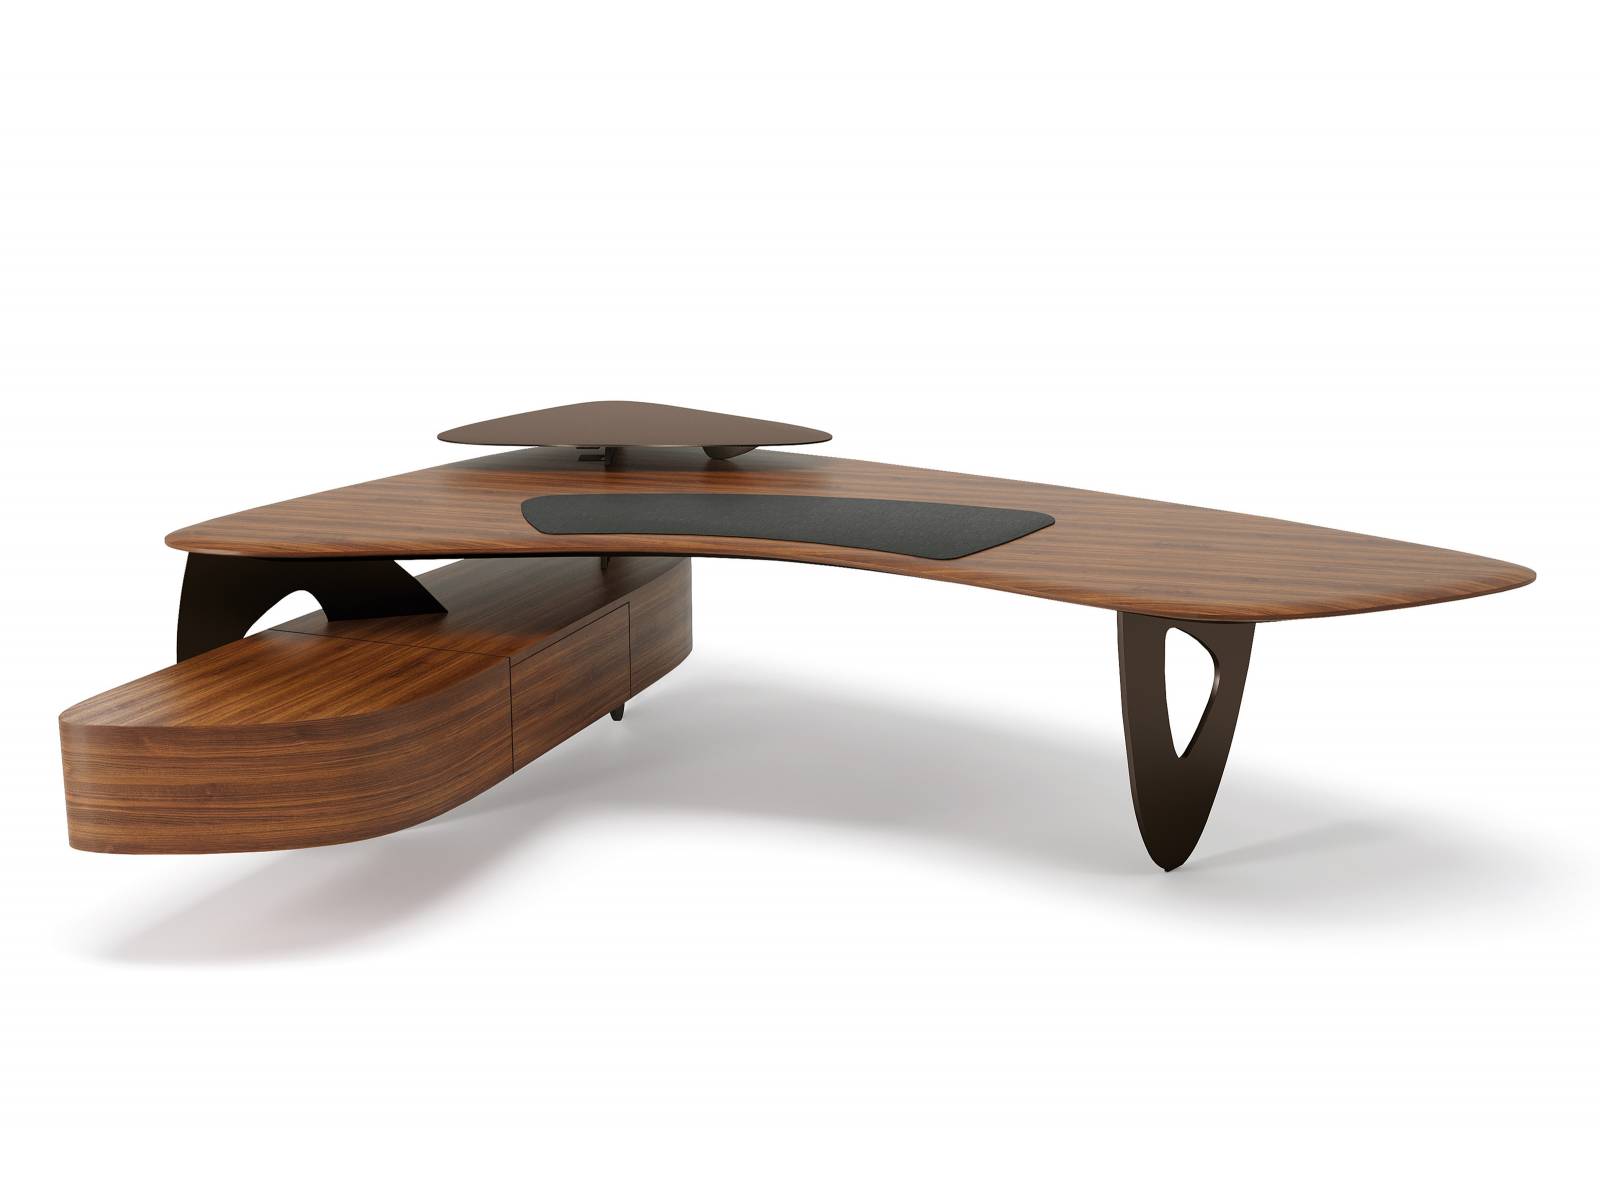 Bürotisch oder Skulptur? Wir meinen: Beides! Der «Tama Desk» von EOOS Design ist ein klares Statement zu Eleganz, Schönheit und Selbstbewusstsein. Aus hochwertigen Materialien gefertigt, mit ausgeklügelten Details ausgestattet und in zwei Grössen erhältlich. Walter Knoll.